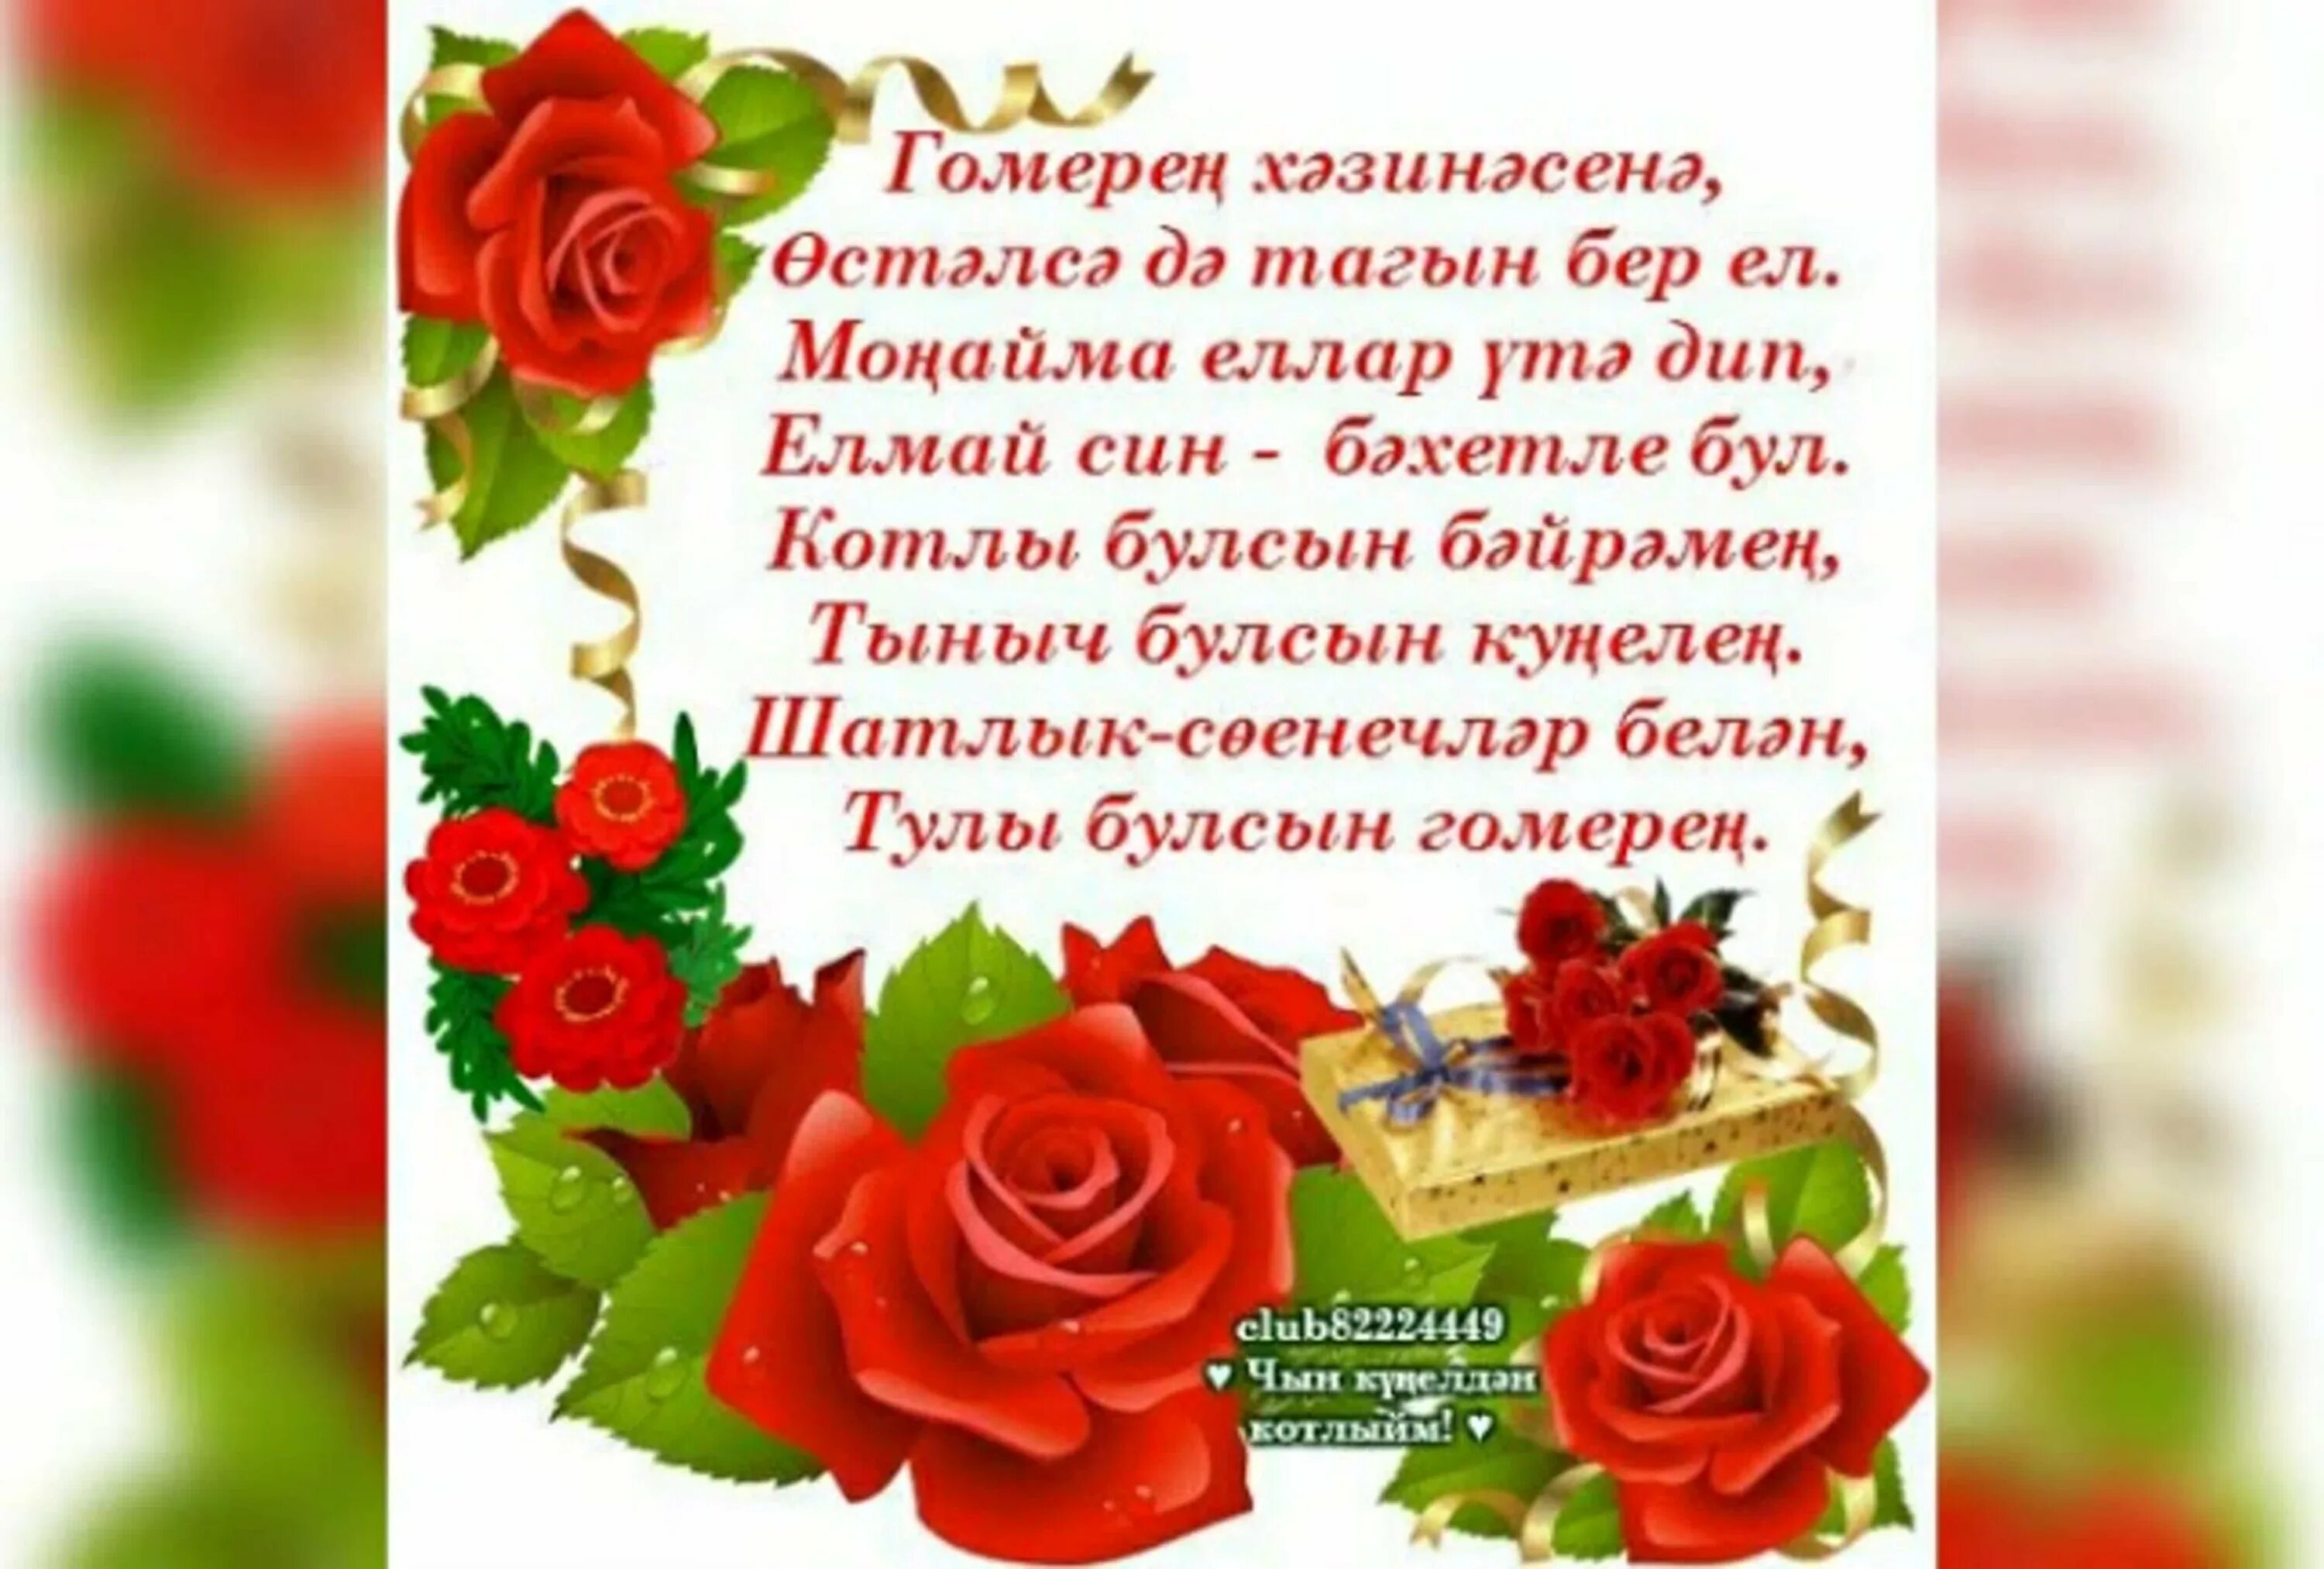 Поздравление на таджикском языке с днем рождения. Поздравления с днём рождения на татарском языке. Поздравление на татарском языке. Татарские поздравления с днем рождения. Поздравления с днём рождения женщине на татарском языке.